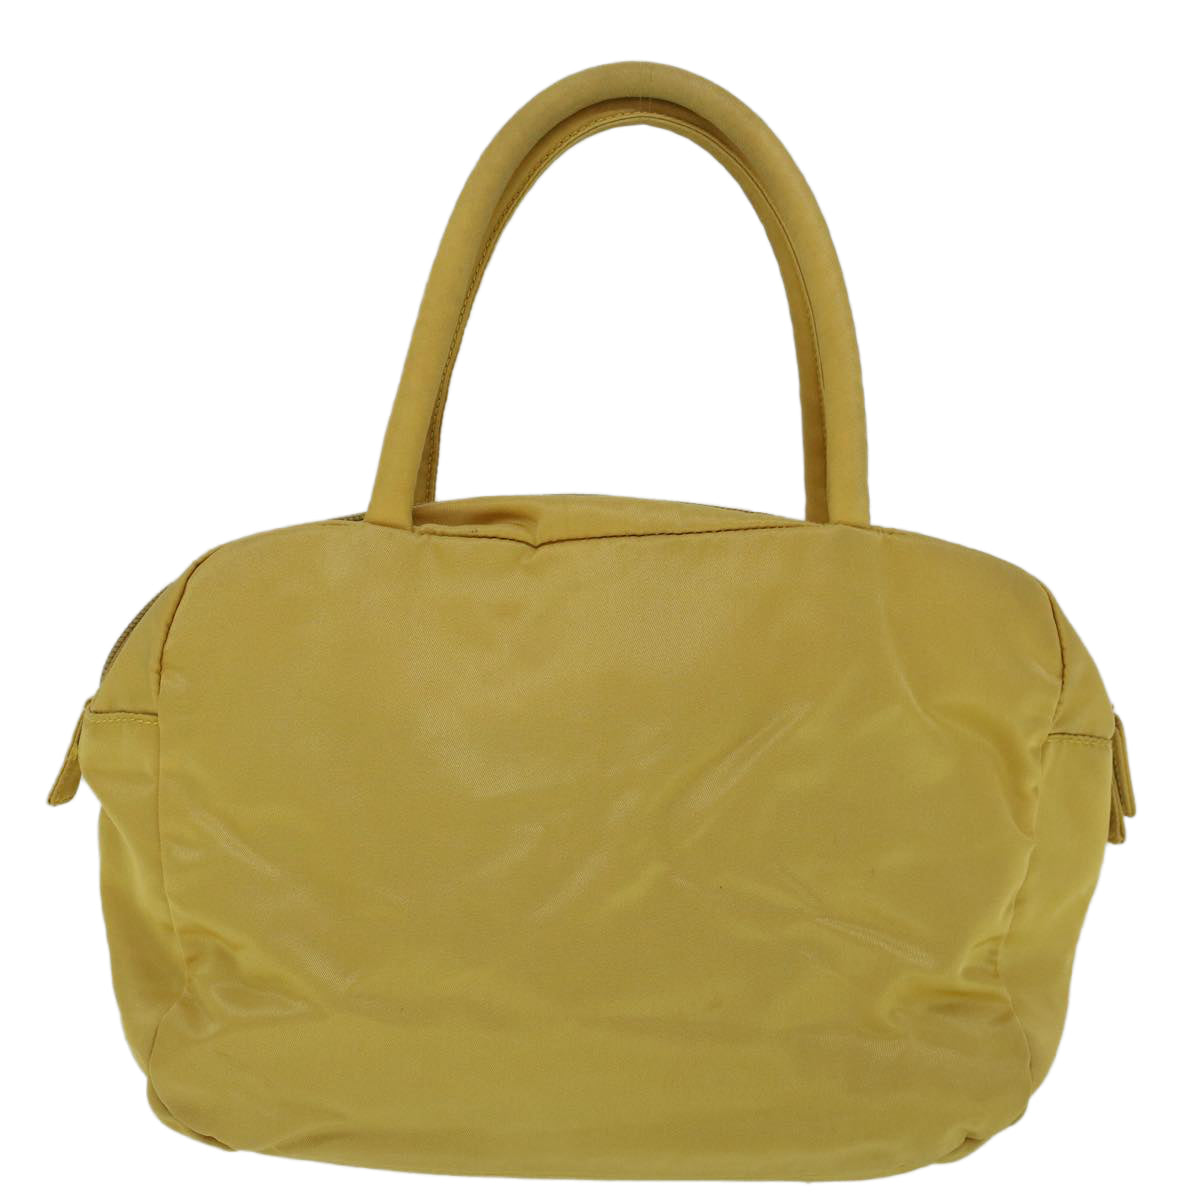 PRADA Hand Bag Nylon Yellow Auth 60250 - 0